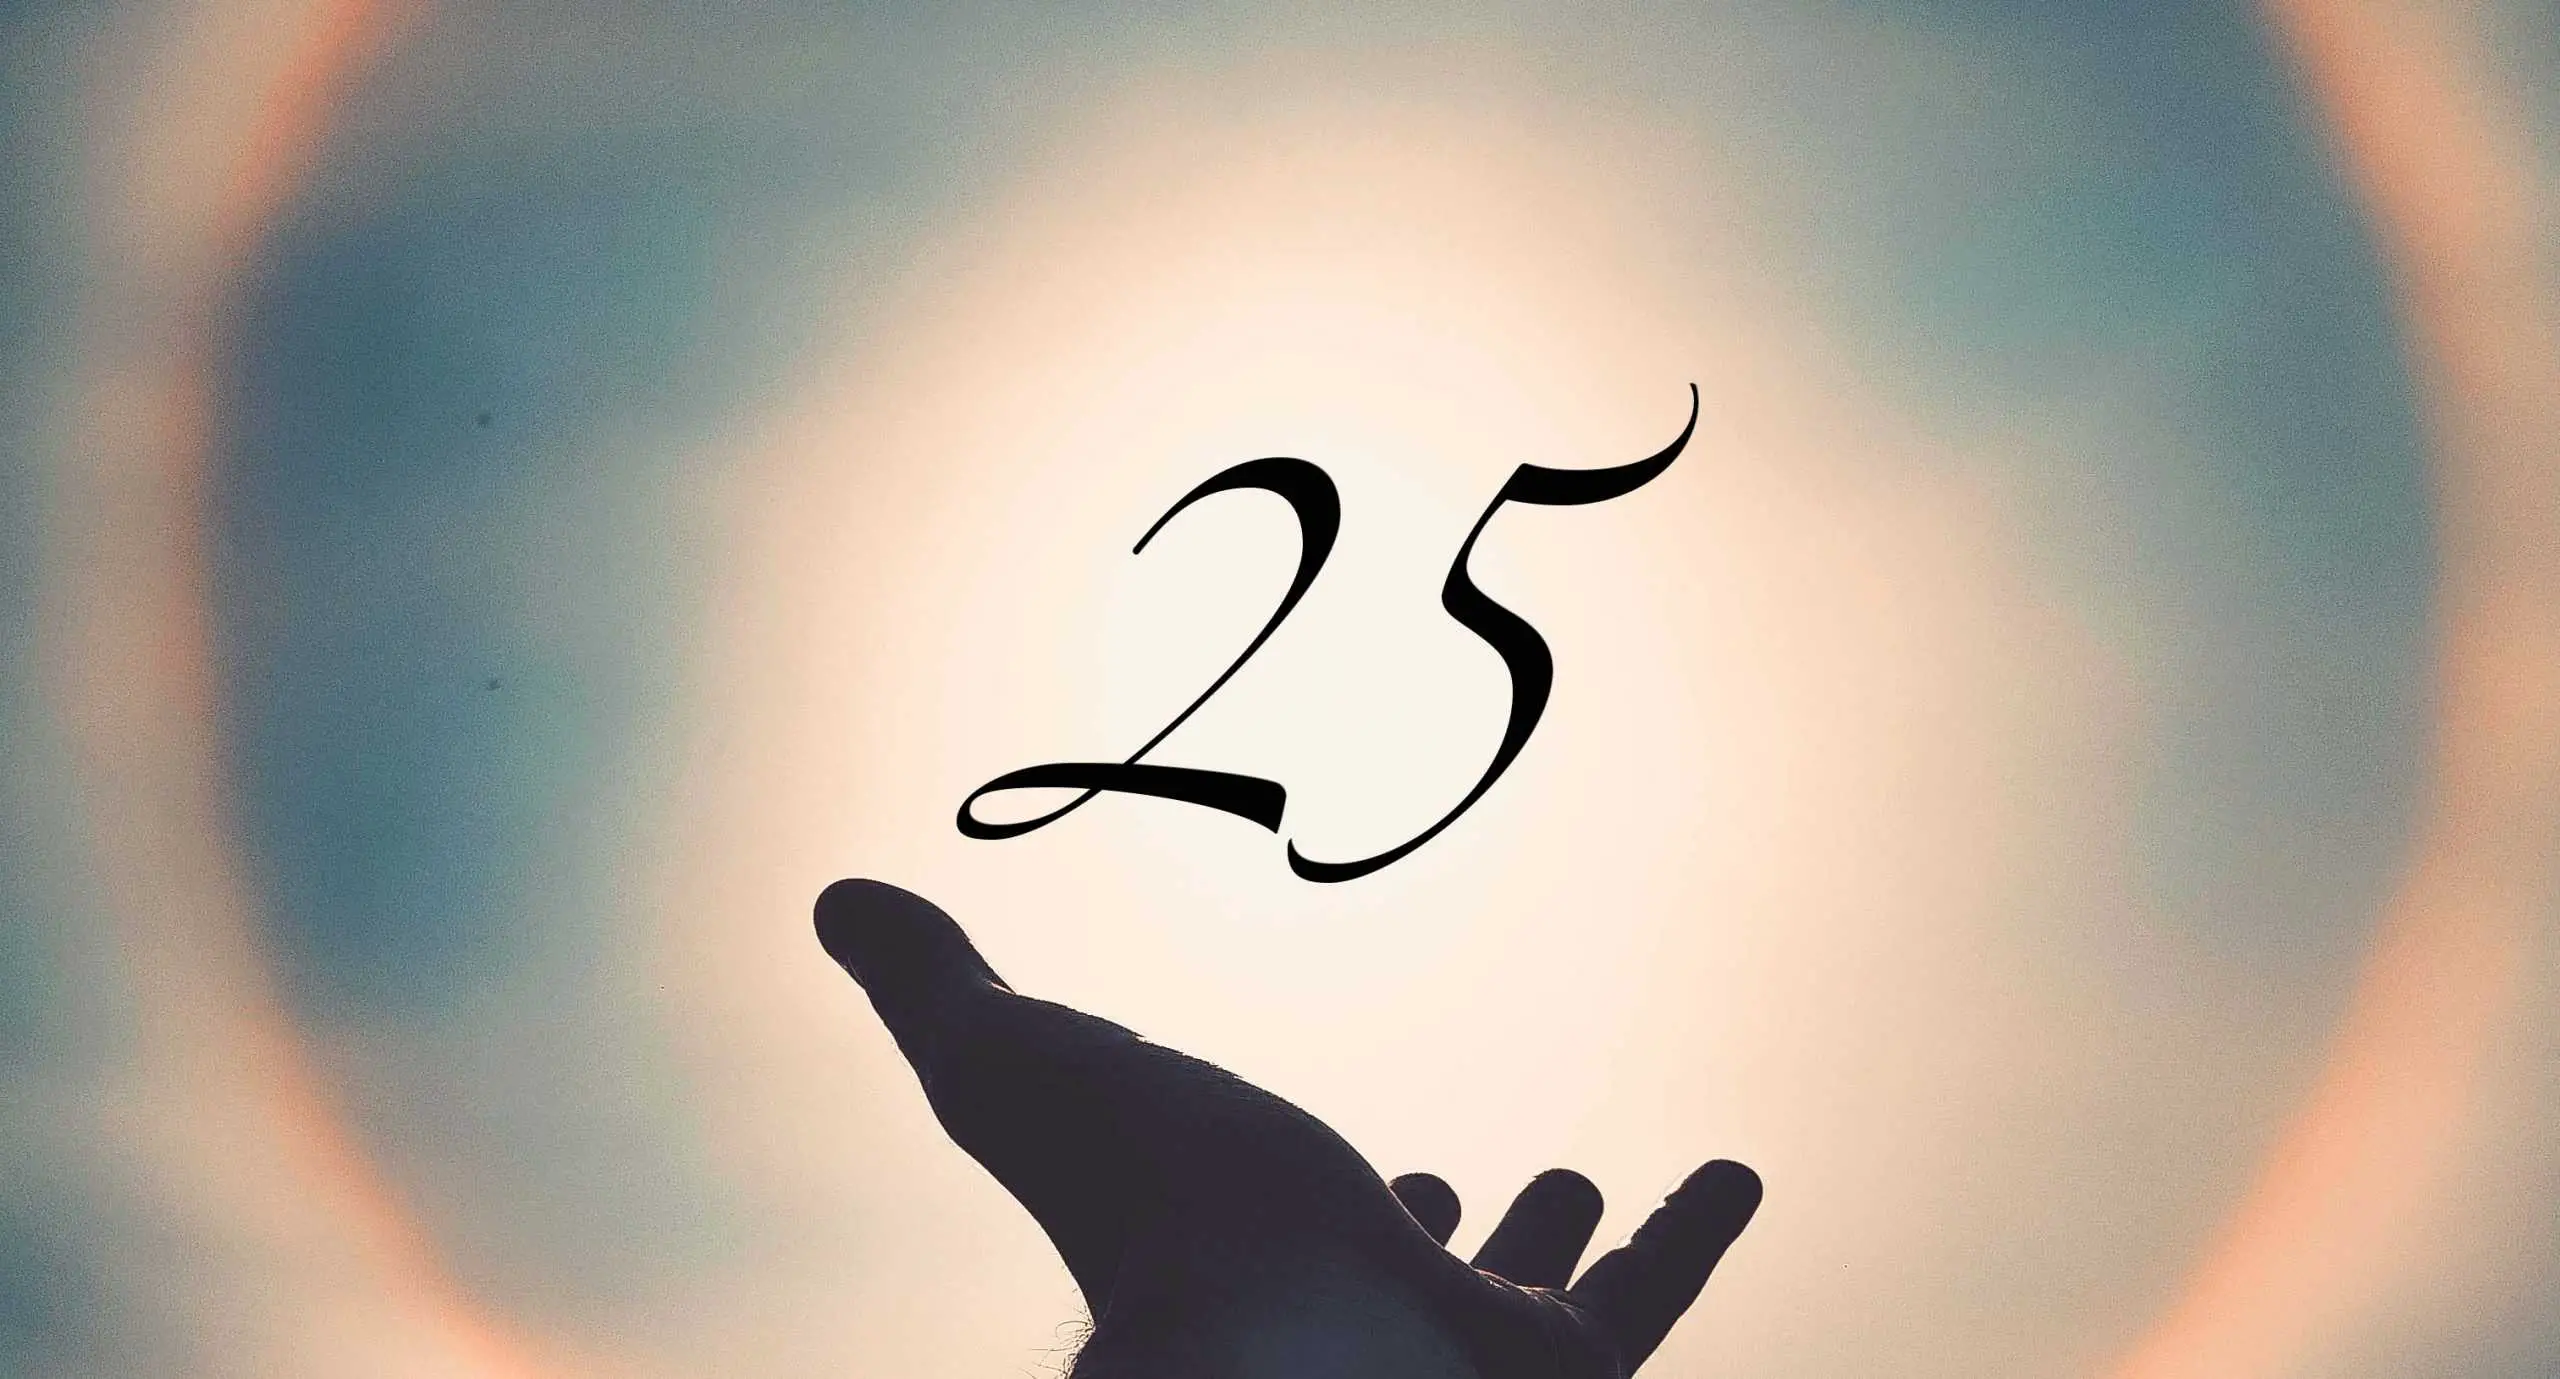 Signification du nombre 25